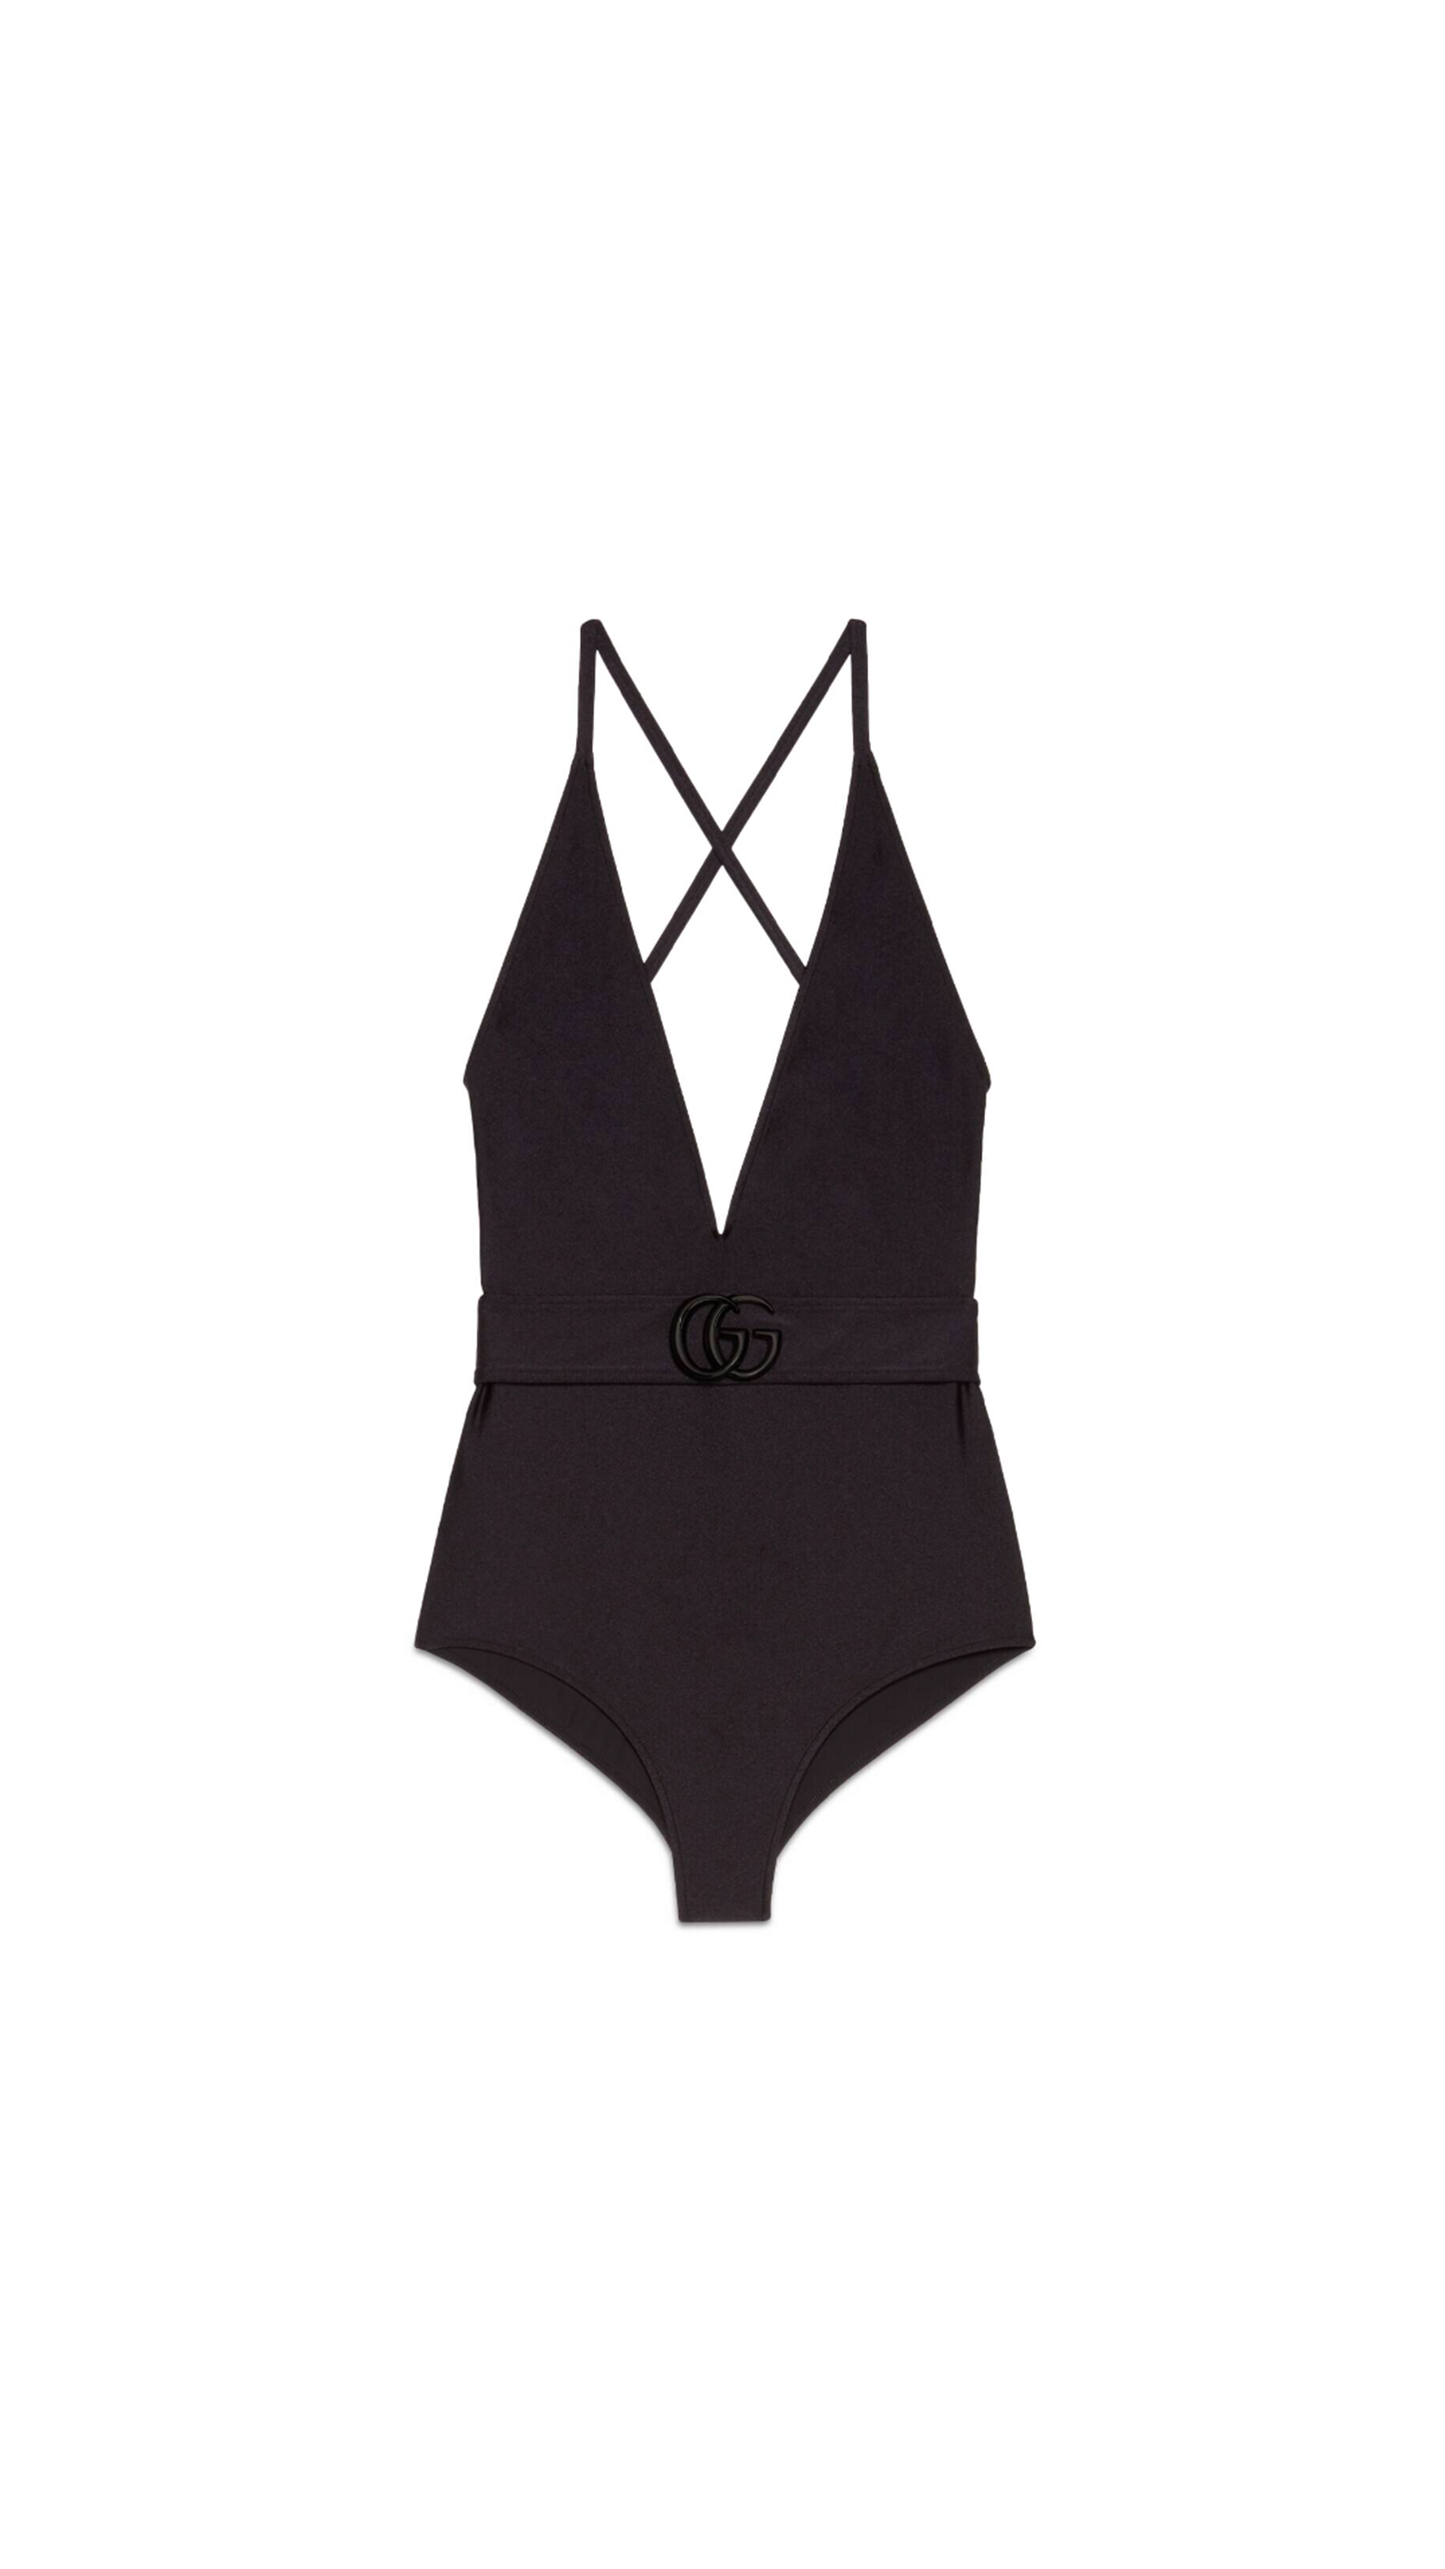 Interlocking G Sparkly Swimsuit - Black